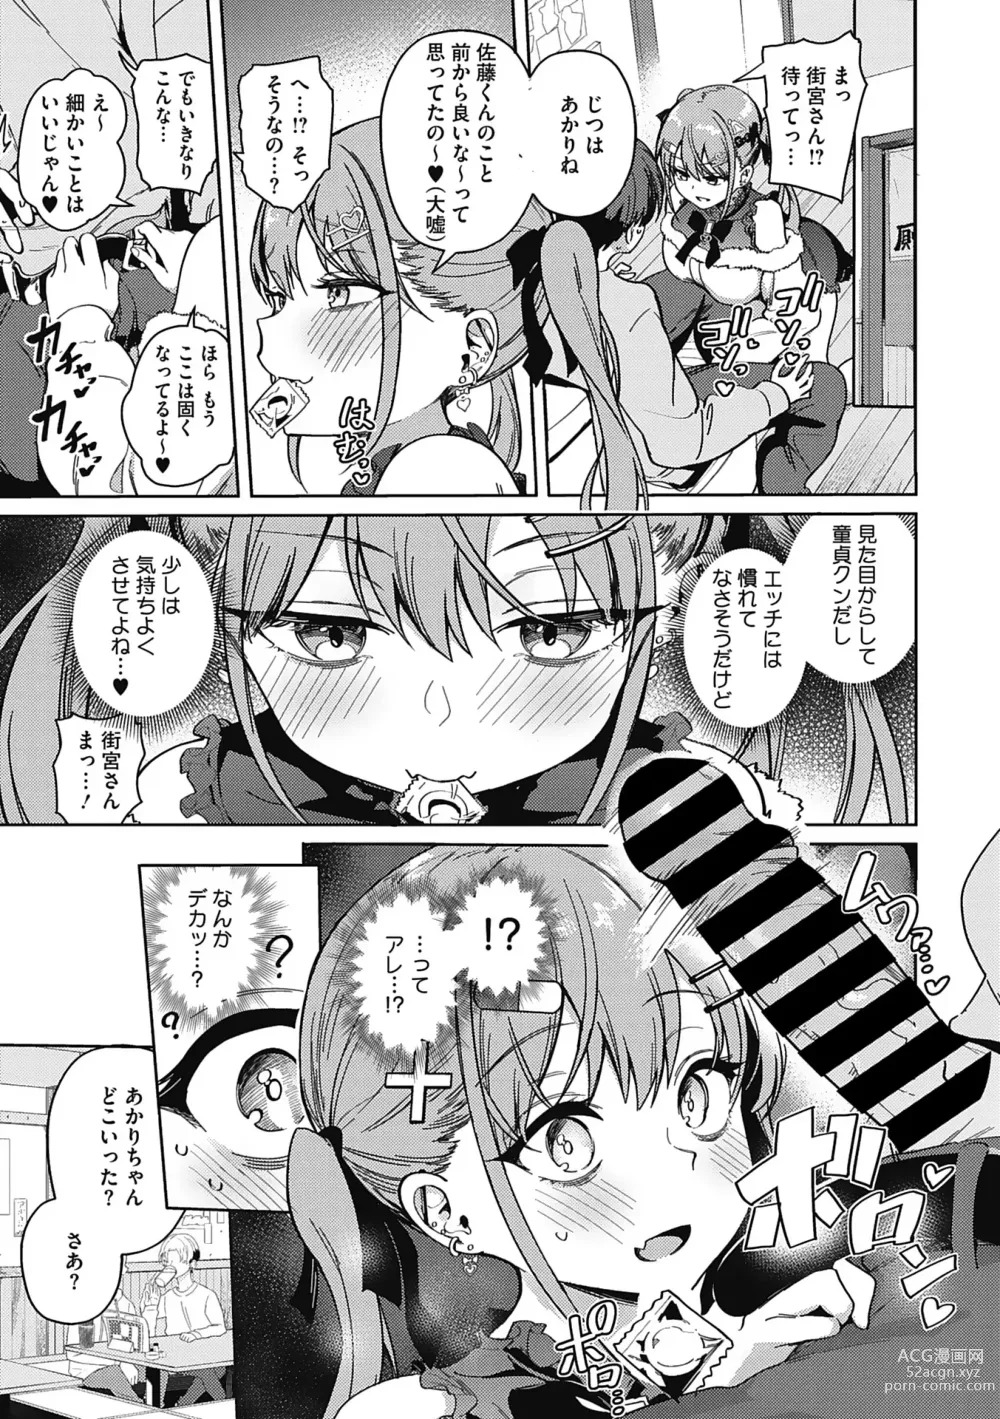 Page 7 of manga Kegasaretai-kei Kanojo.